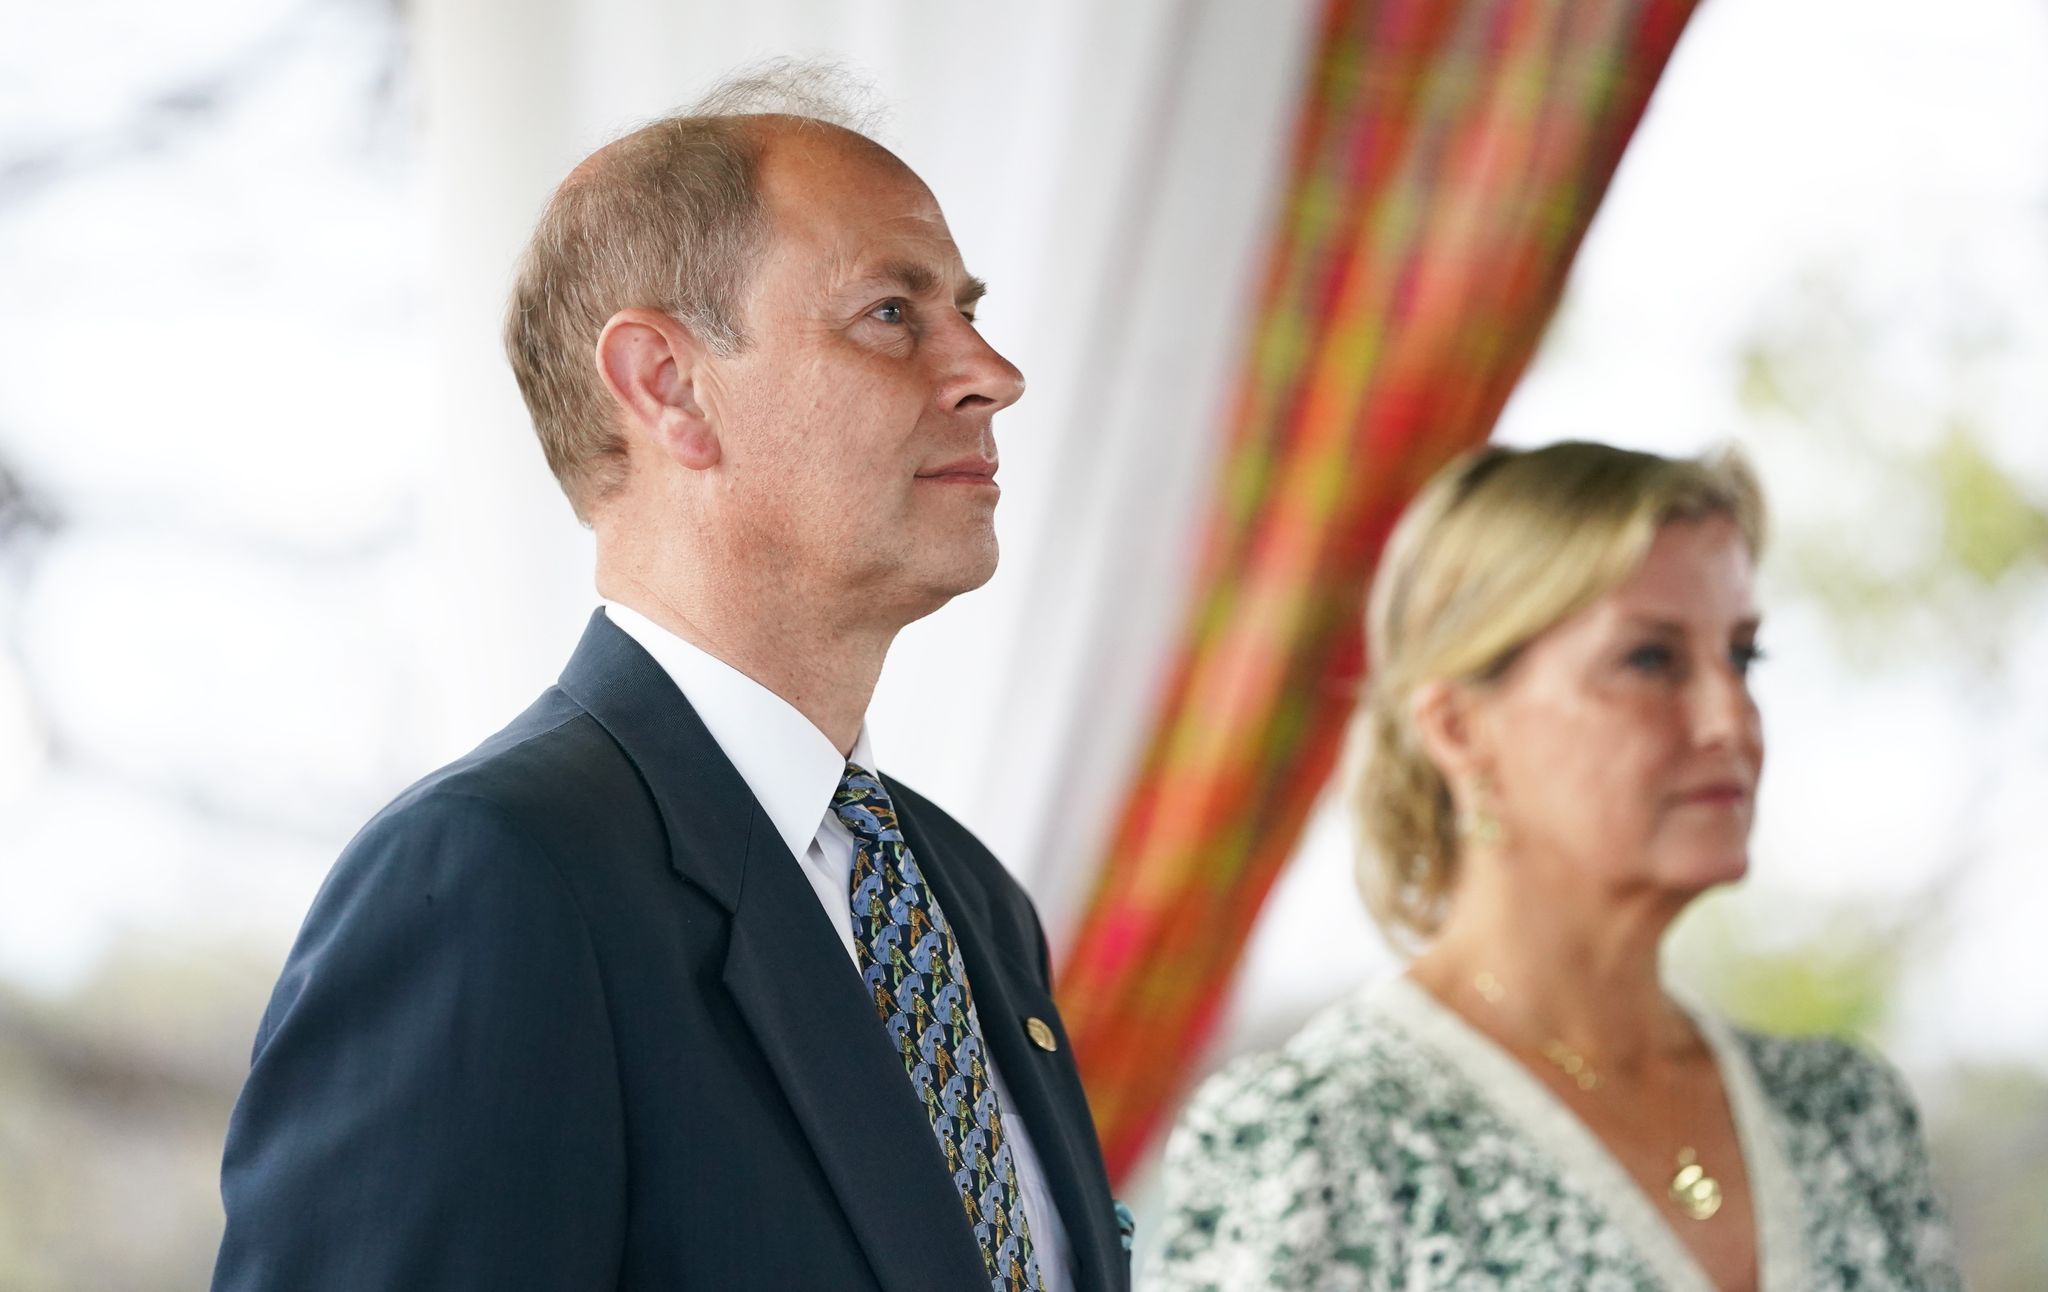 Der jüngste Bruder von König Charles III. (75) und seine Frau stehen nur selten im Fokus der Öffentlichkeit, spielen aber zunehmend eine wichtige Rolle im Königshaus. Foto: Joe Giddens/PA Wire/dpa